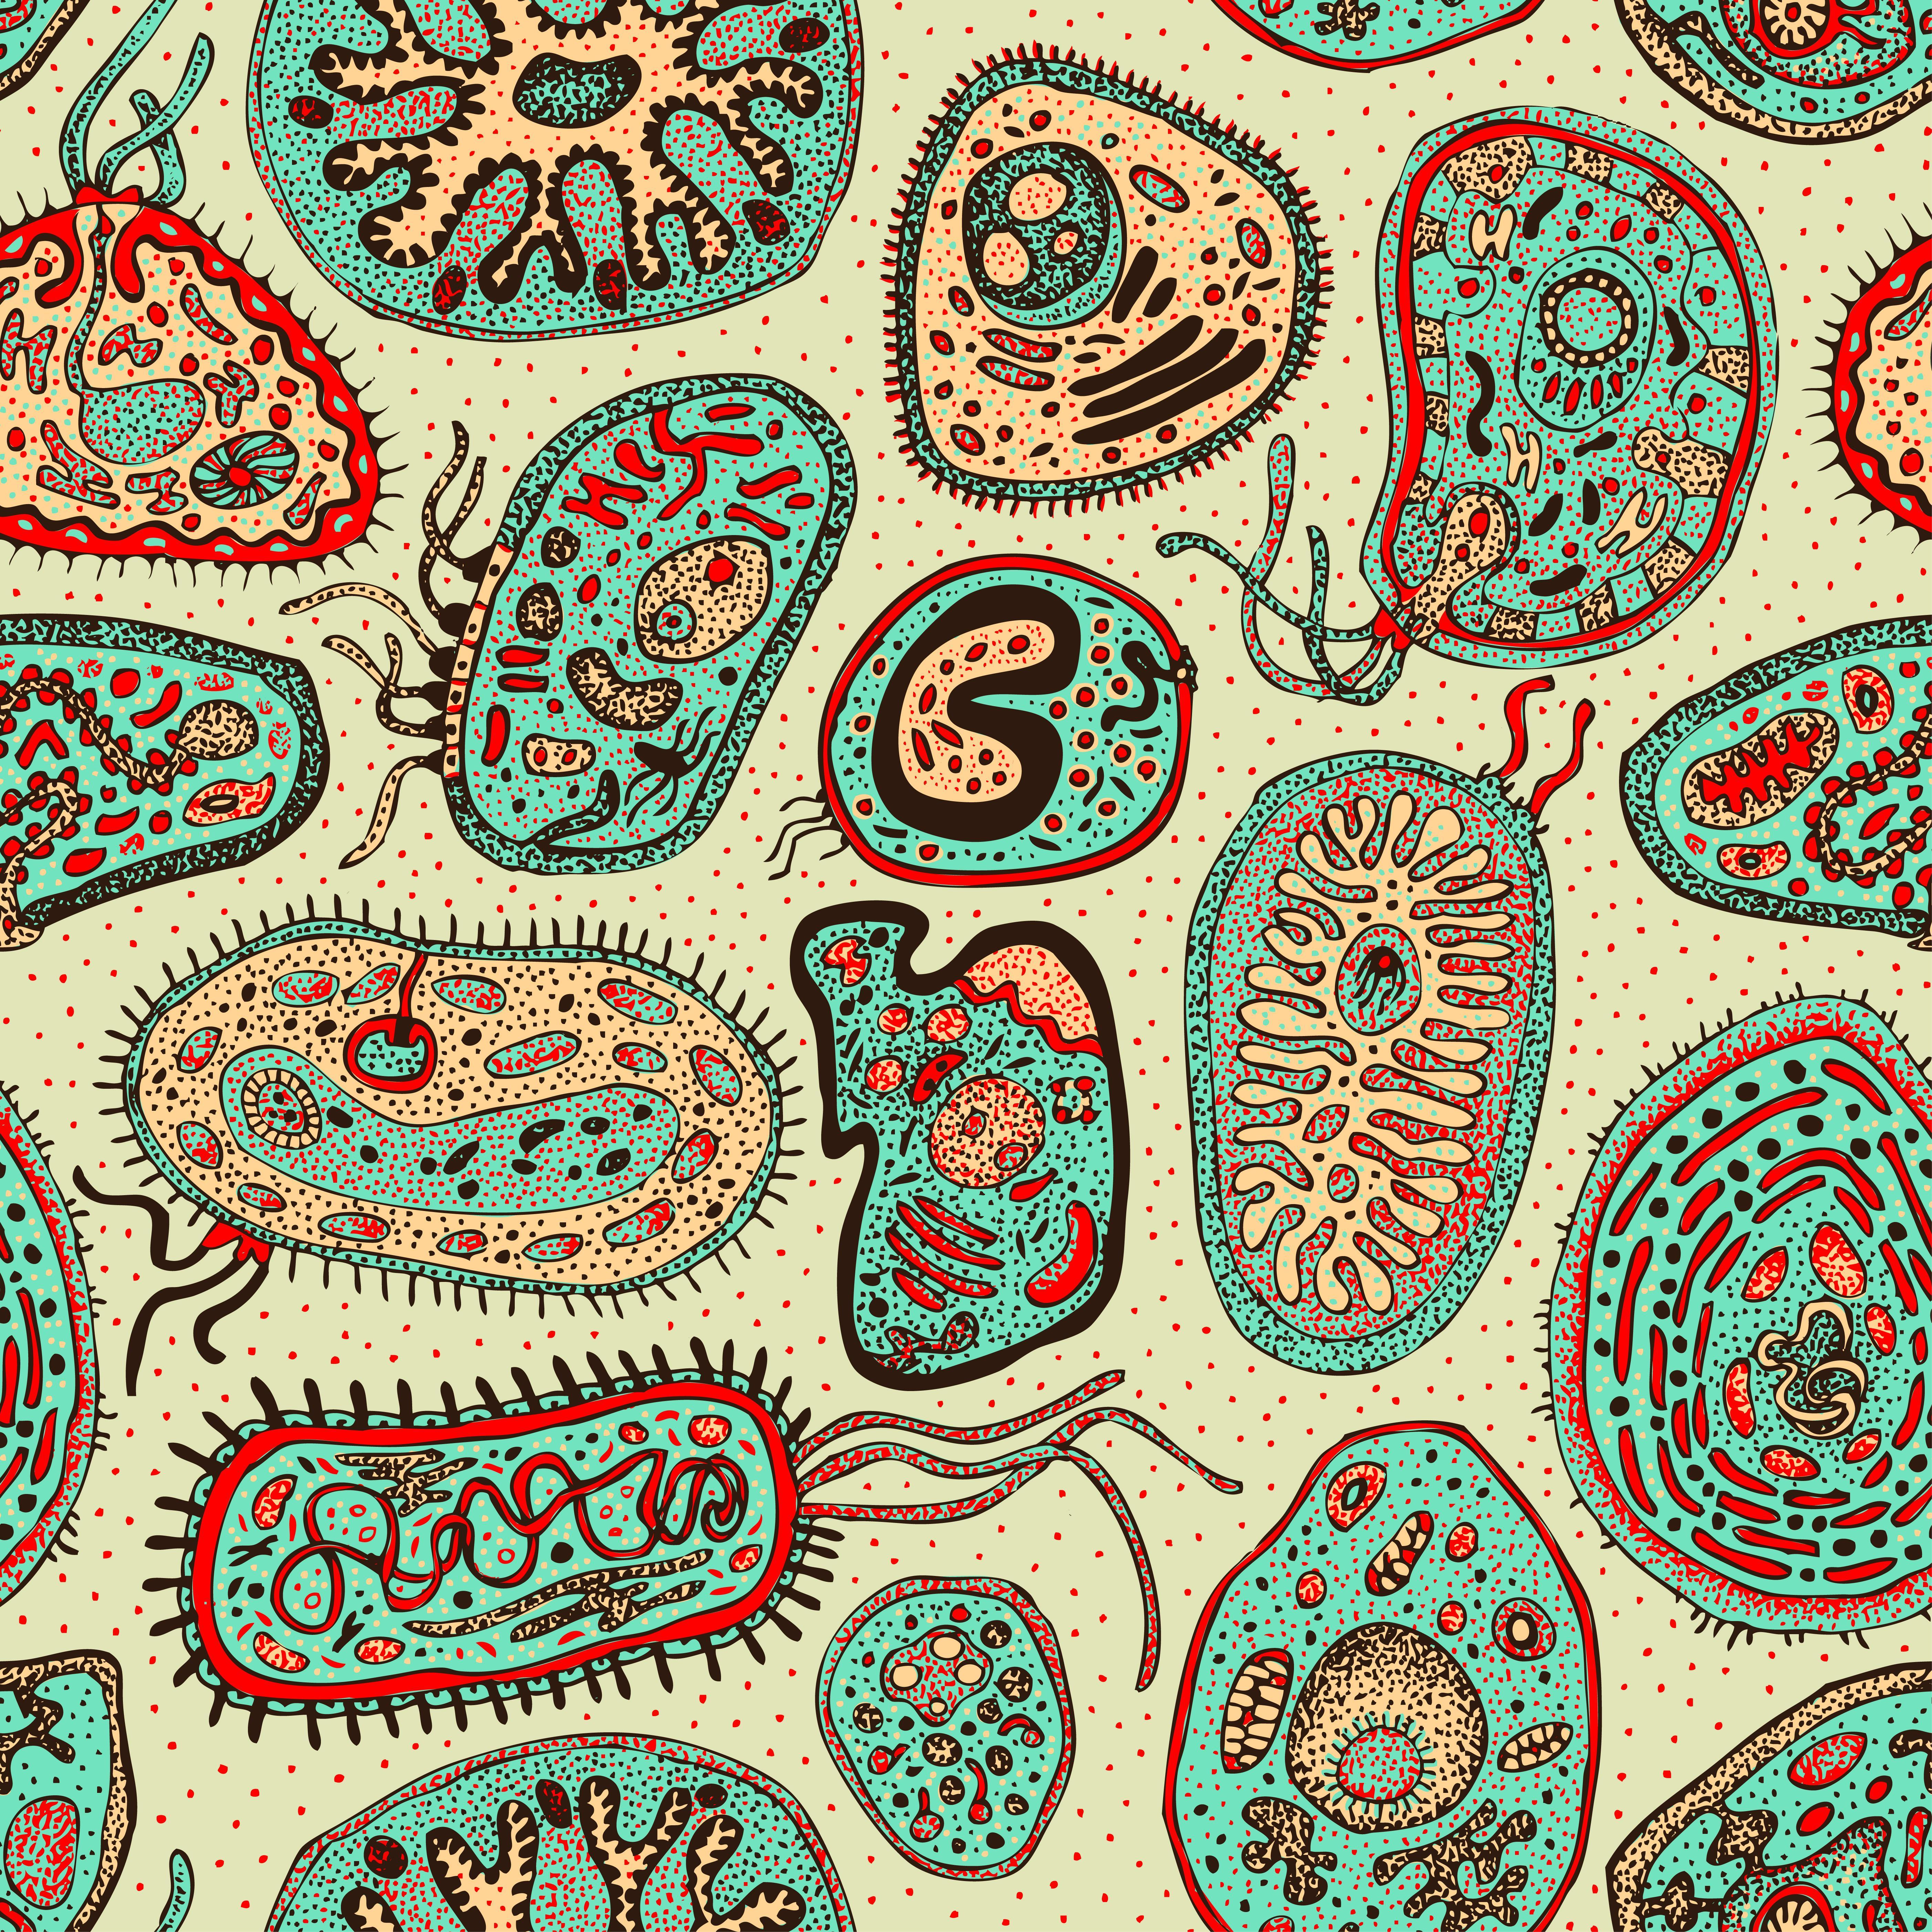 human biology wallpaper